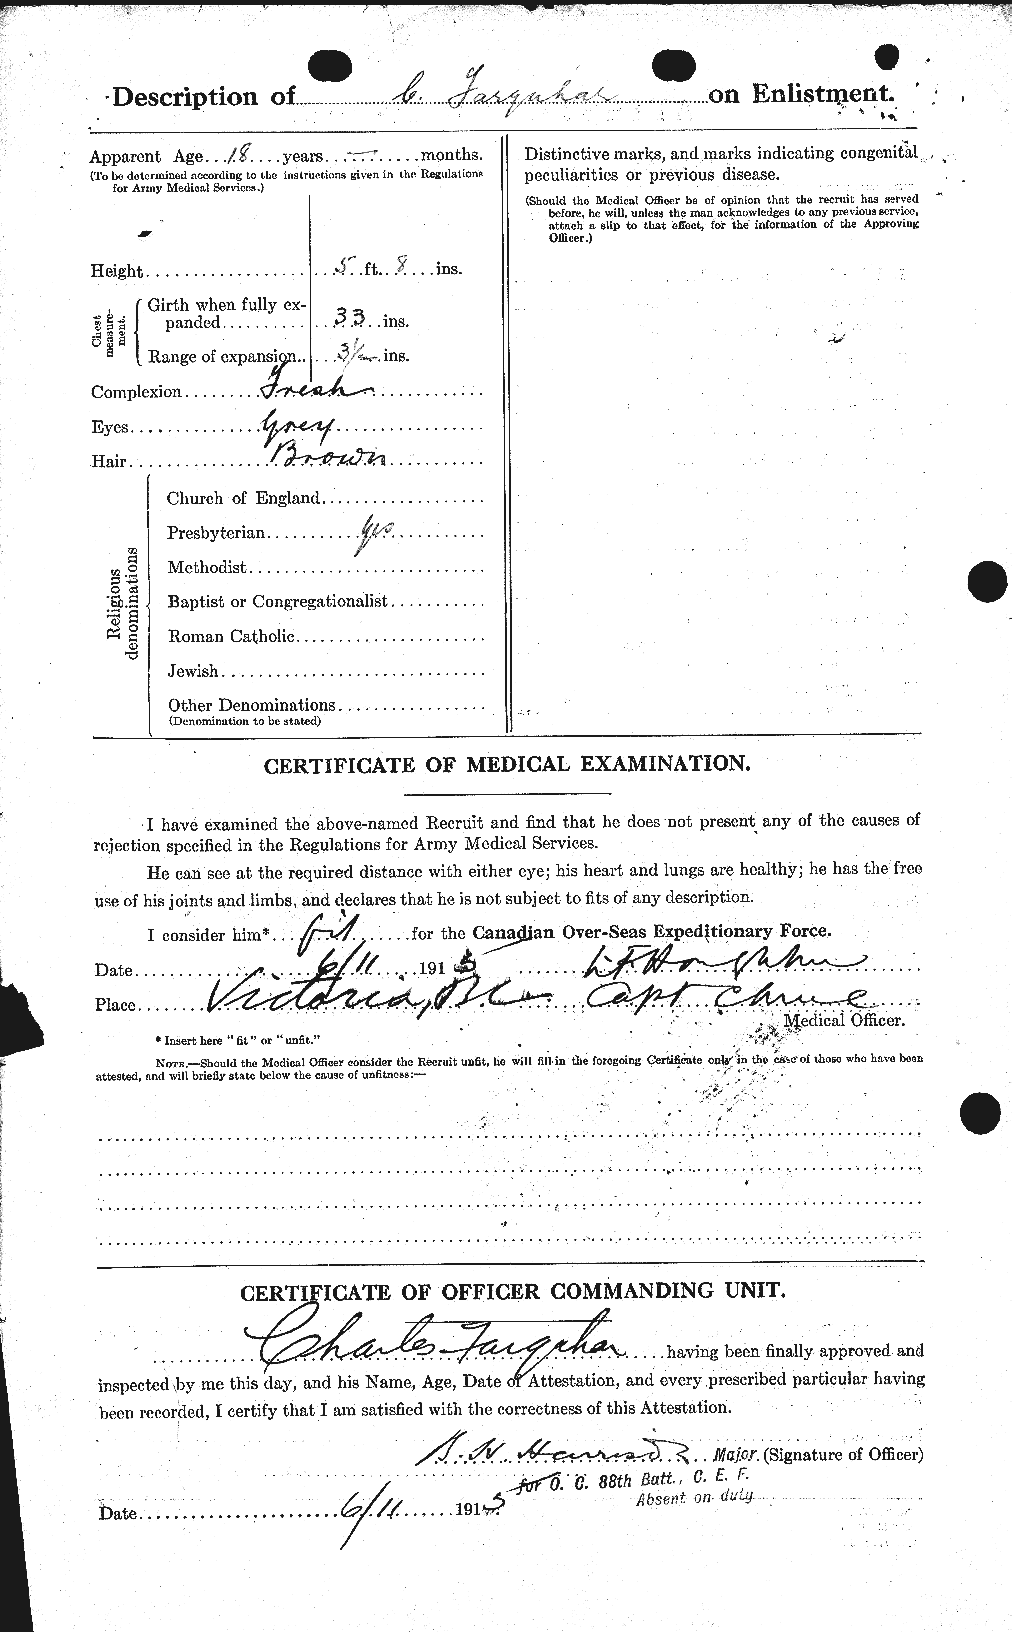 Dossiers du Personnel de la Première Guerre mondiale - CEC 318765b